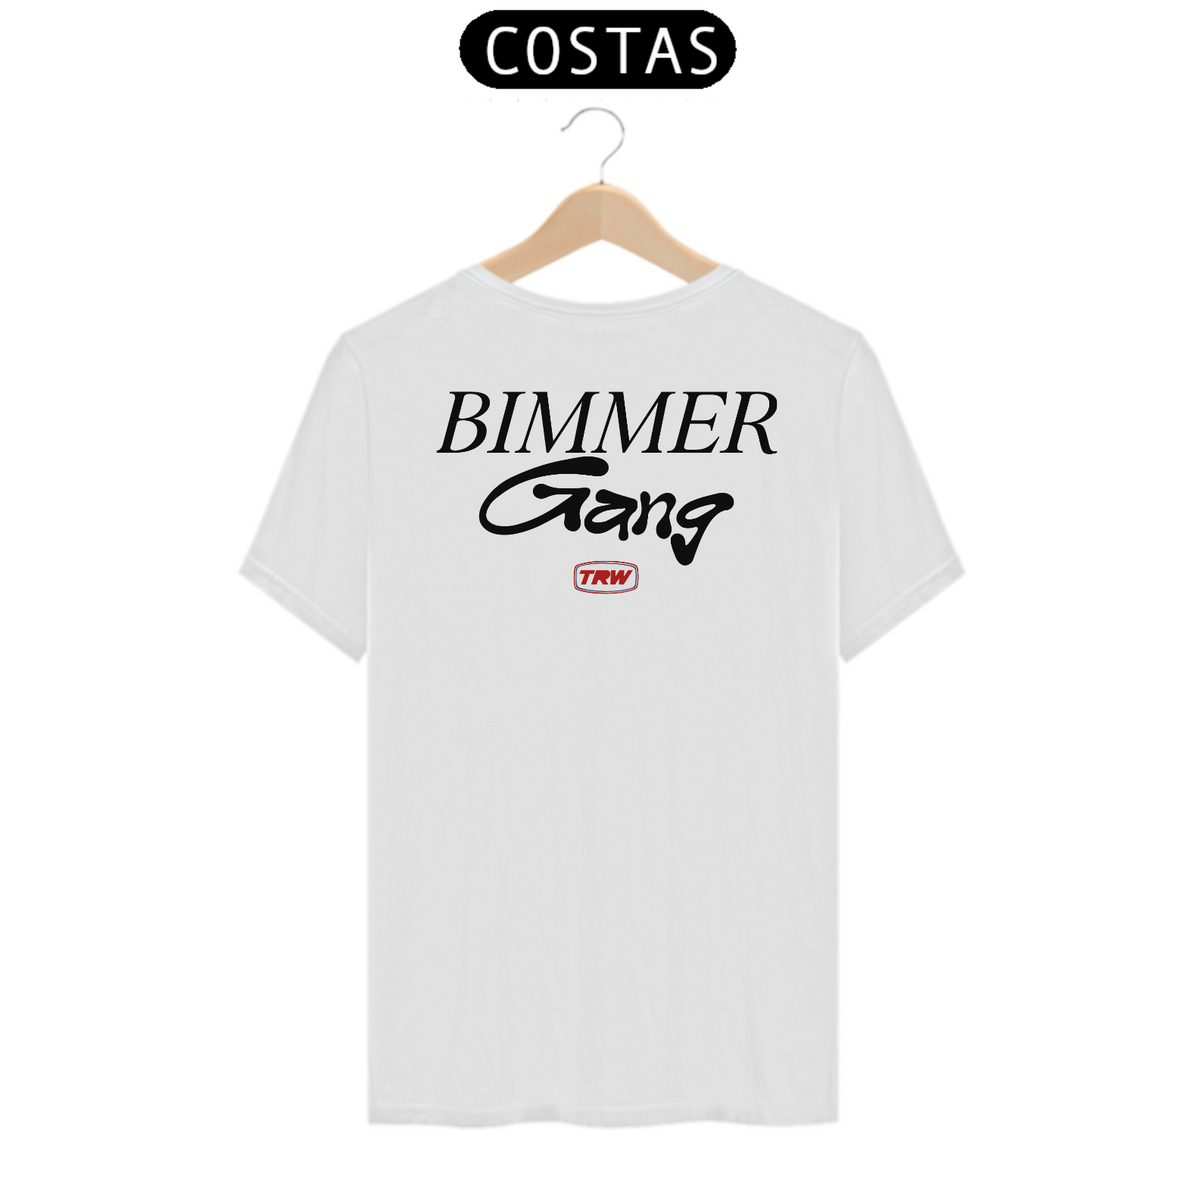 Nome do produto: Camiseta Bimmer Gang - Branca